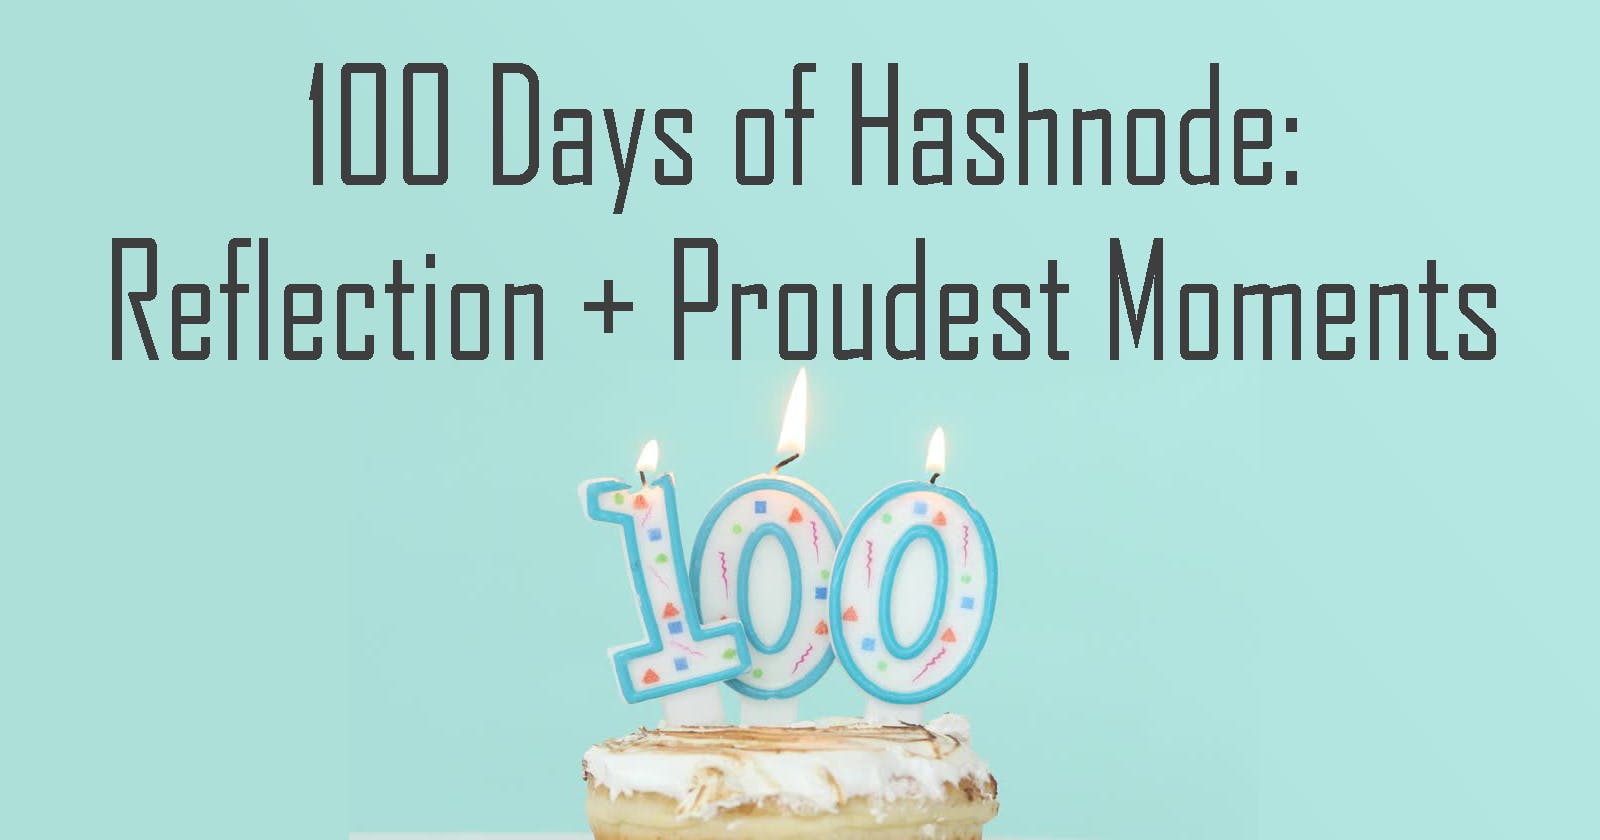 100 Days of Hashnode: The Journey So Far